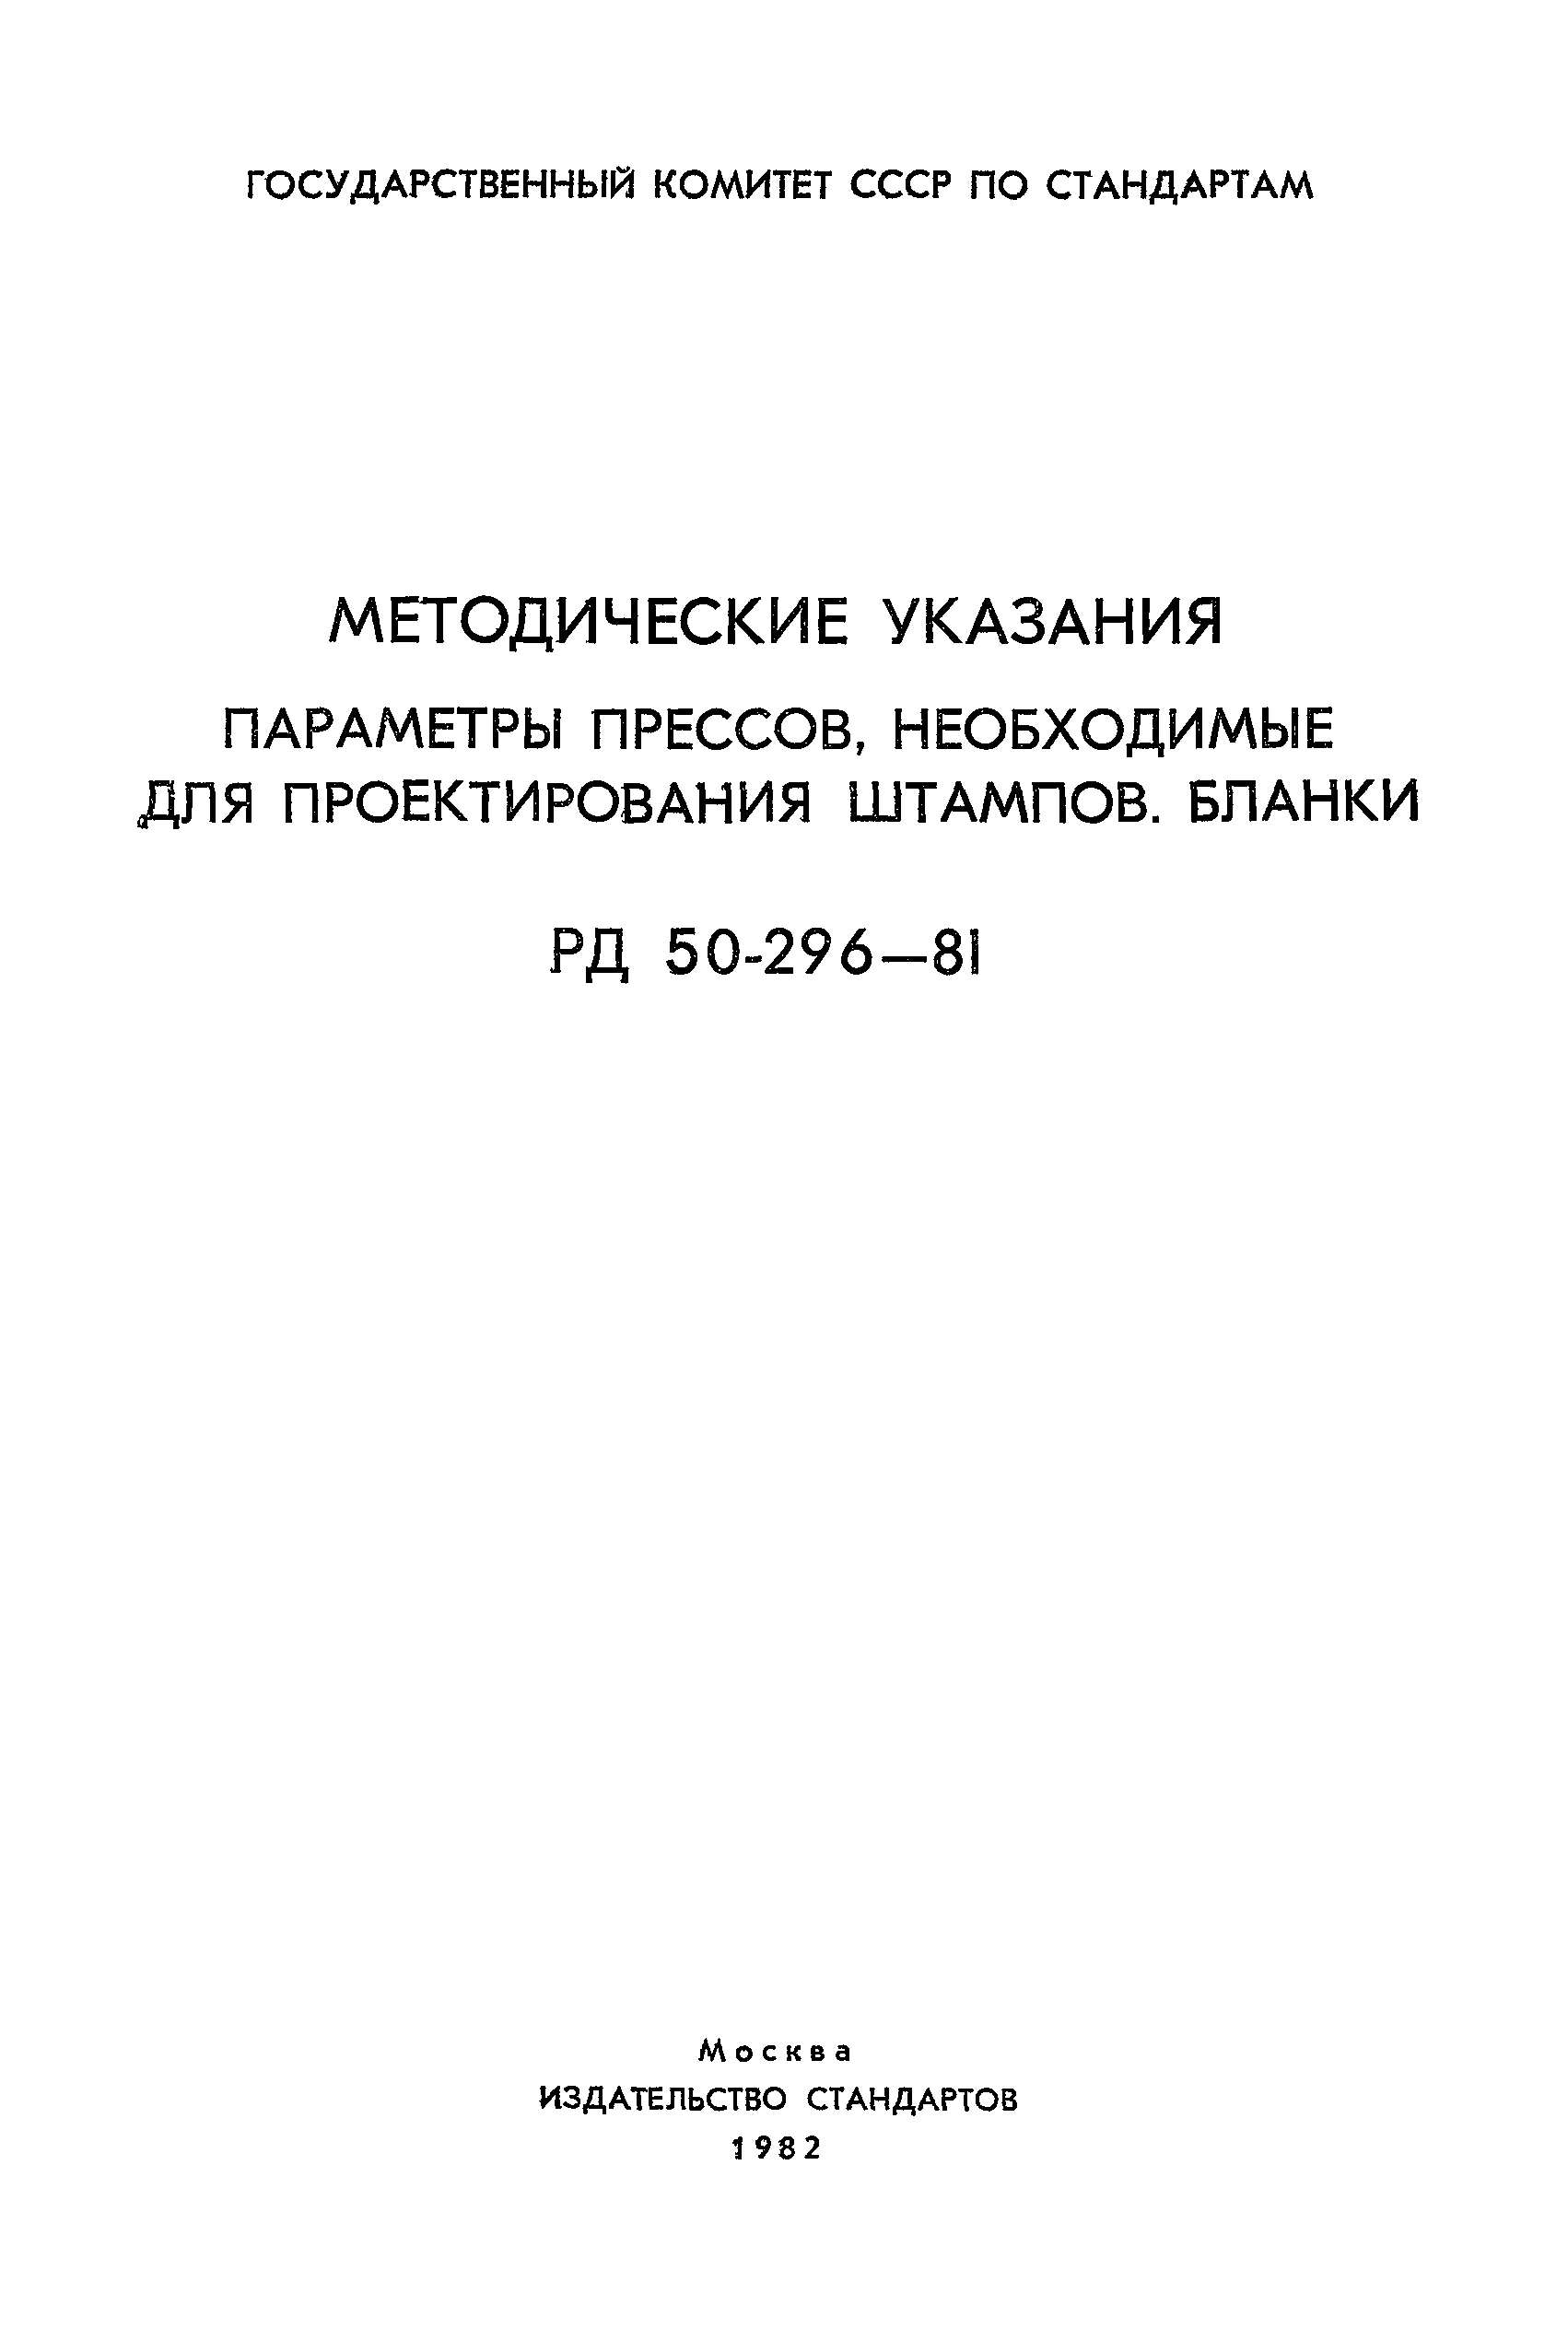 РД 50-296-81